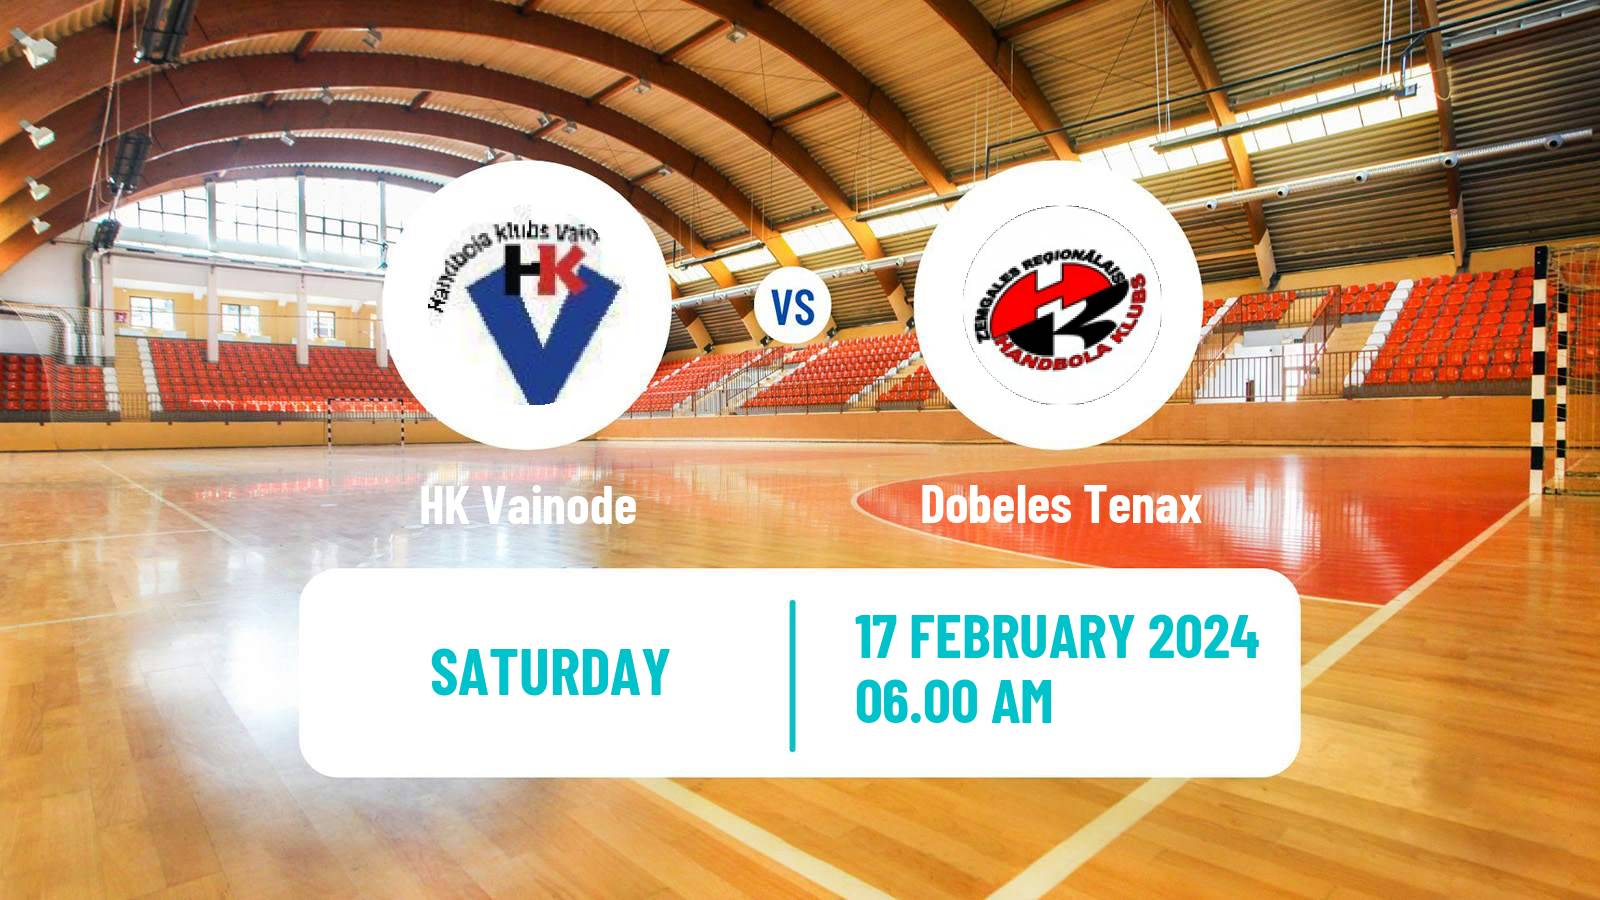 Handball Latvian Virsliga Handball Vainode - Dobeles Tenax